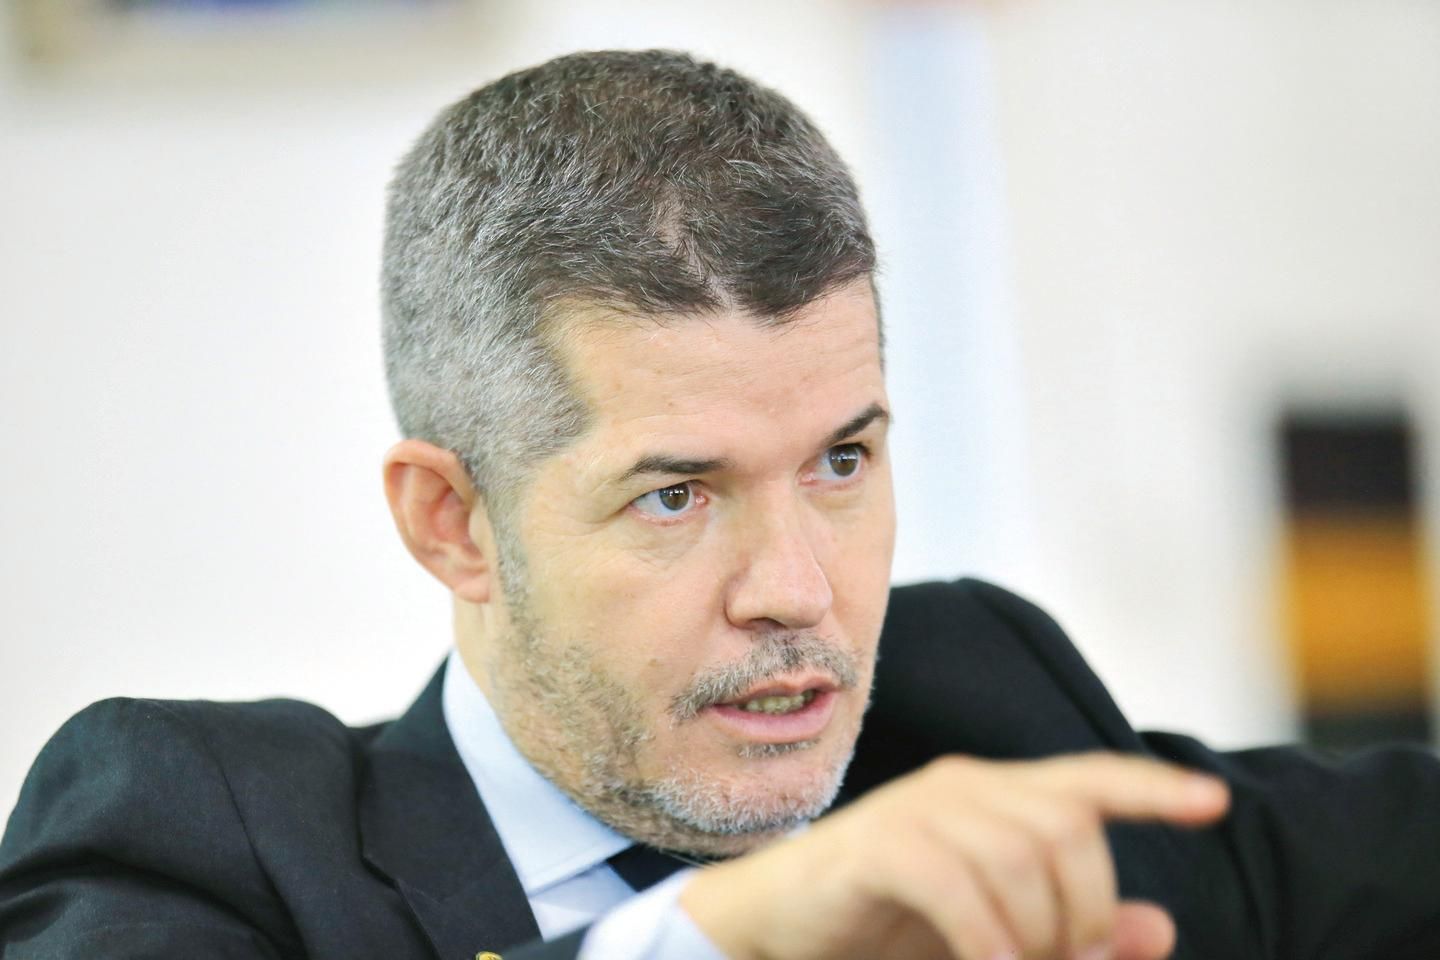 Fernando Jorge Carneiro lança candidatura à presidência do Bahia